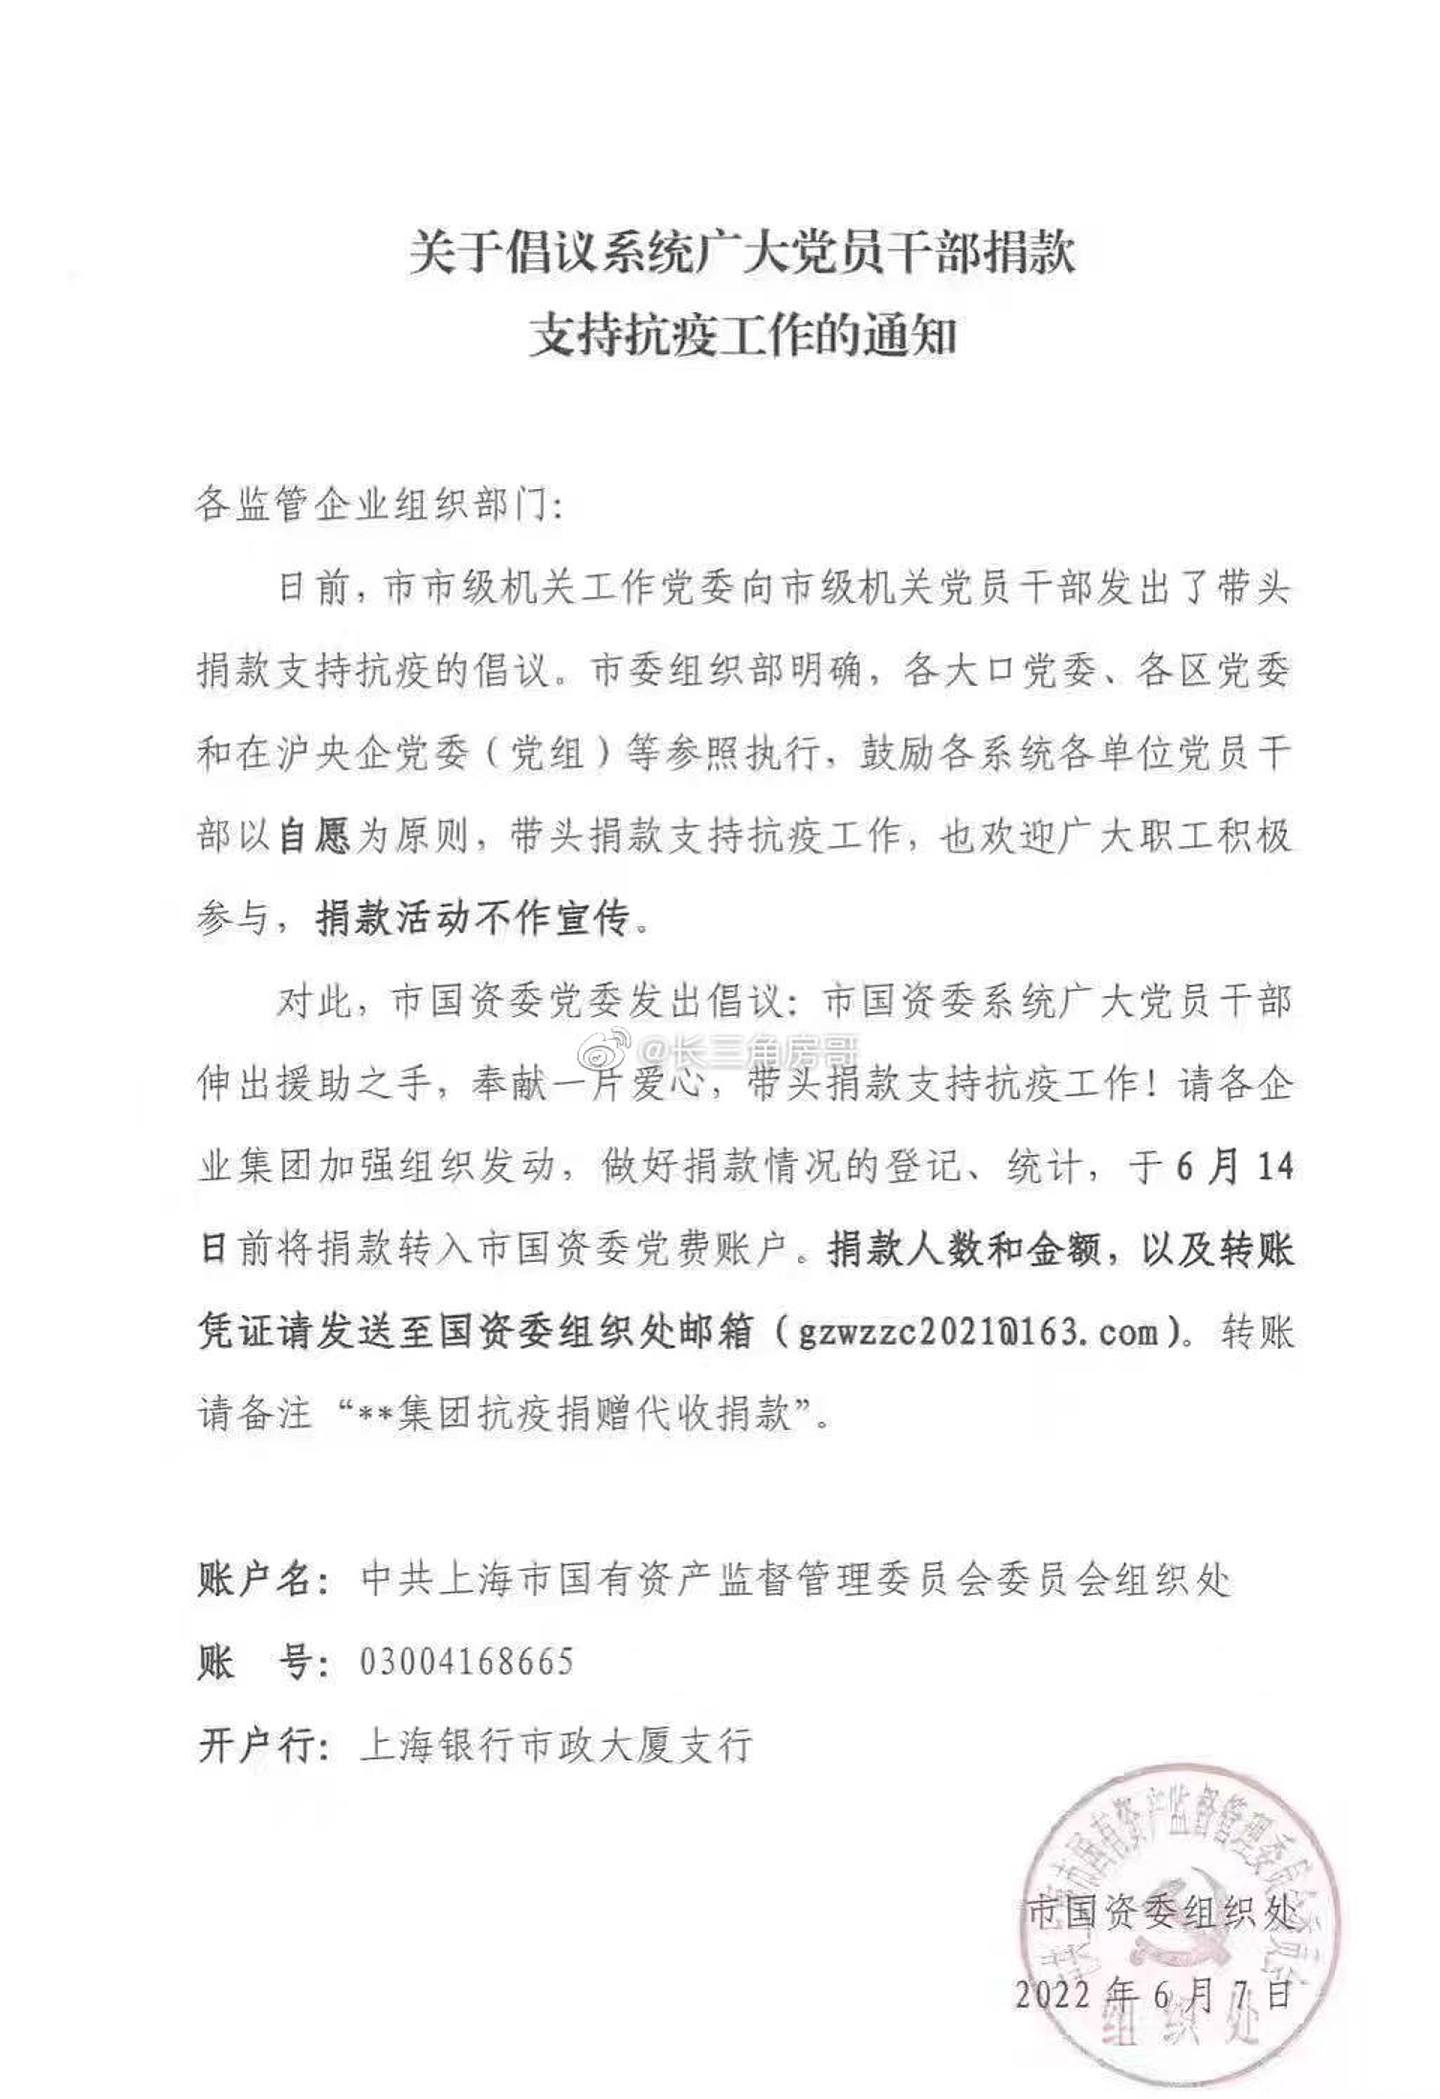 微博近日流传一张上海国资委发出的通知，呼吁党员干部带头捐款抗疫。 （微博@Dddjkbajo）